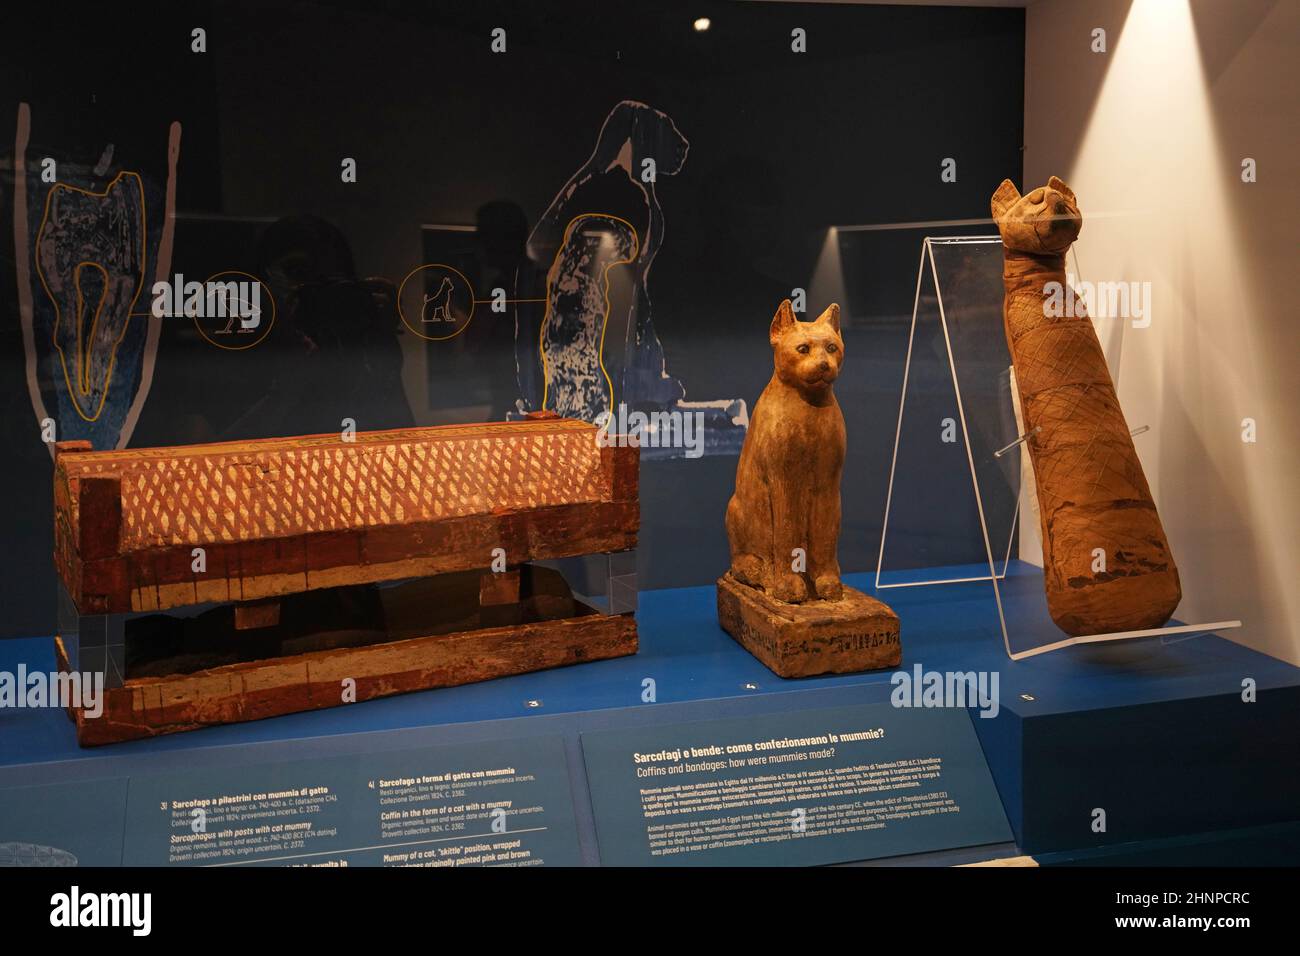 TORINO, ITALIA - 19 AGOSTO 2021: Mamma gatto. Mummificazione del gatto durante la civiltà egizia, Museo Egizio di Torino, Italia Foto Stock